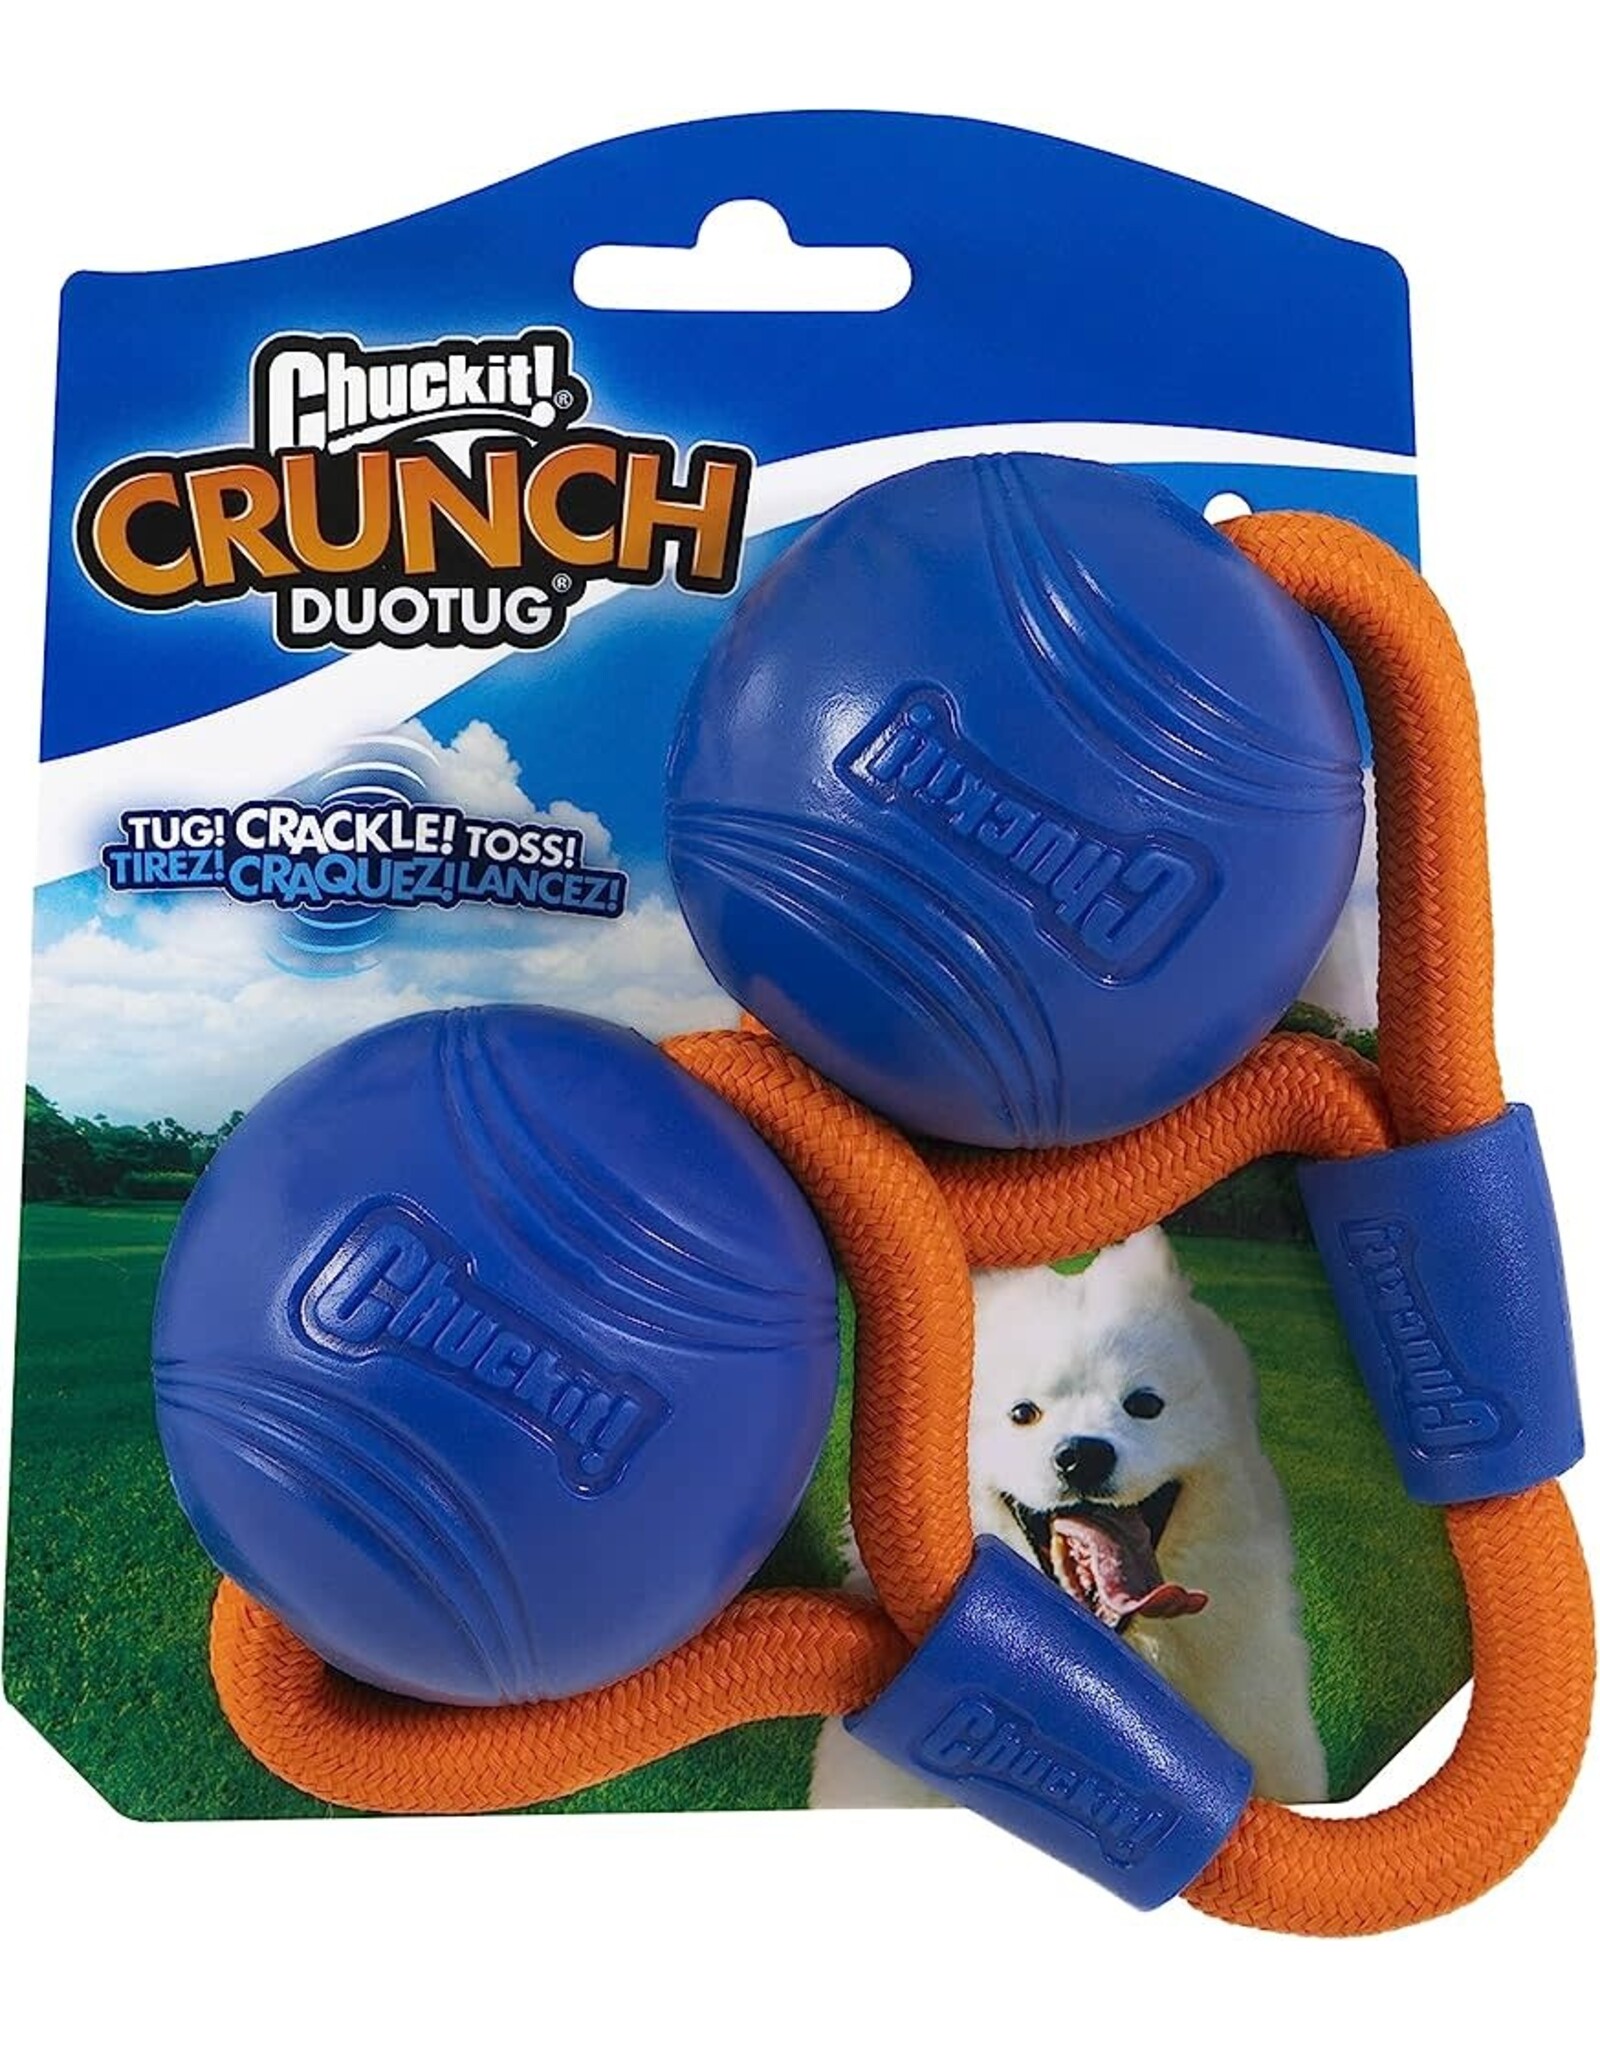 Chuckit! Chuckit Crunch ball duo tug M